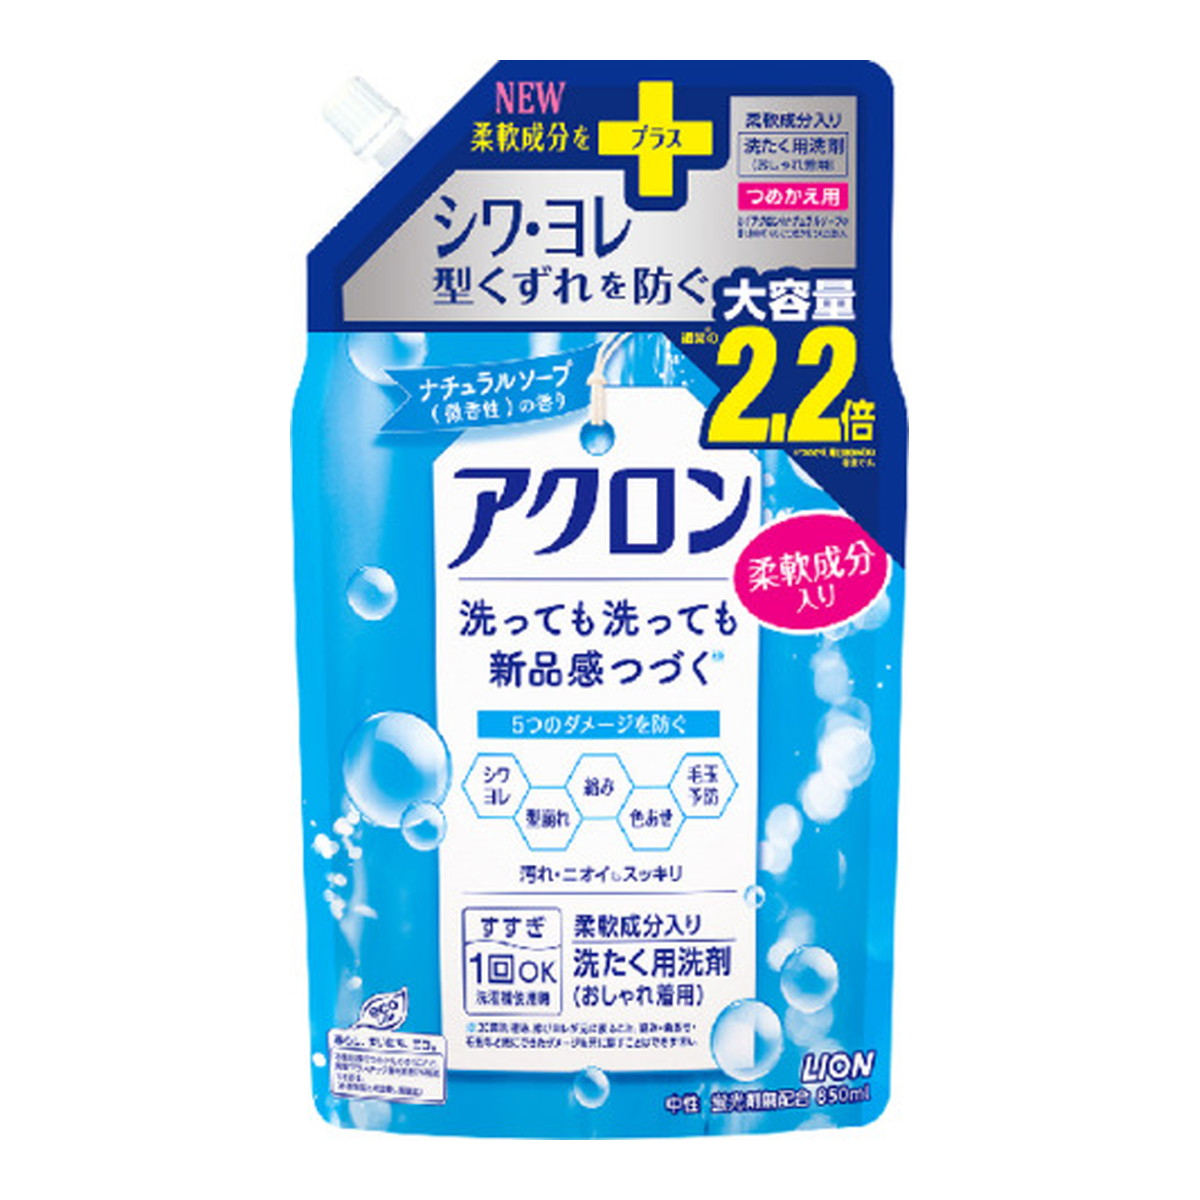 LION アクロン [つめかえ用] ナチュラルソープの香り 850ml × 12個 アクロン 液体洗剤の商品画像